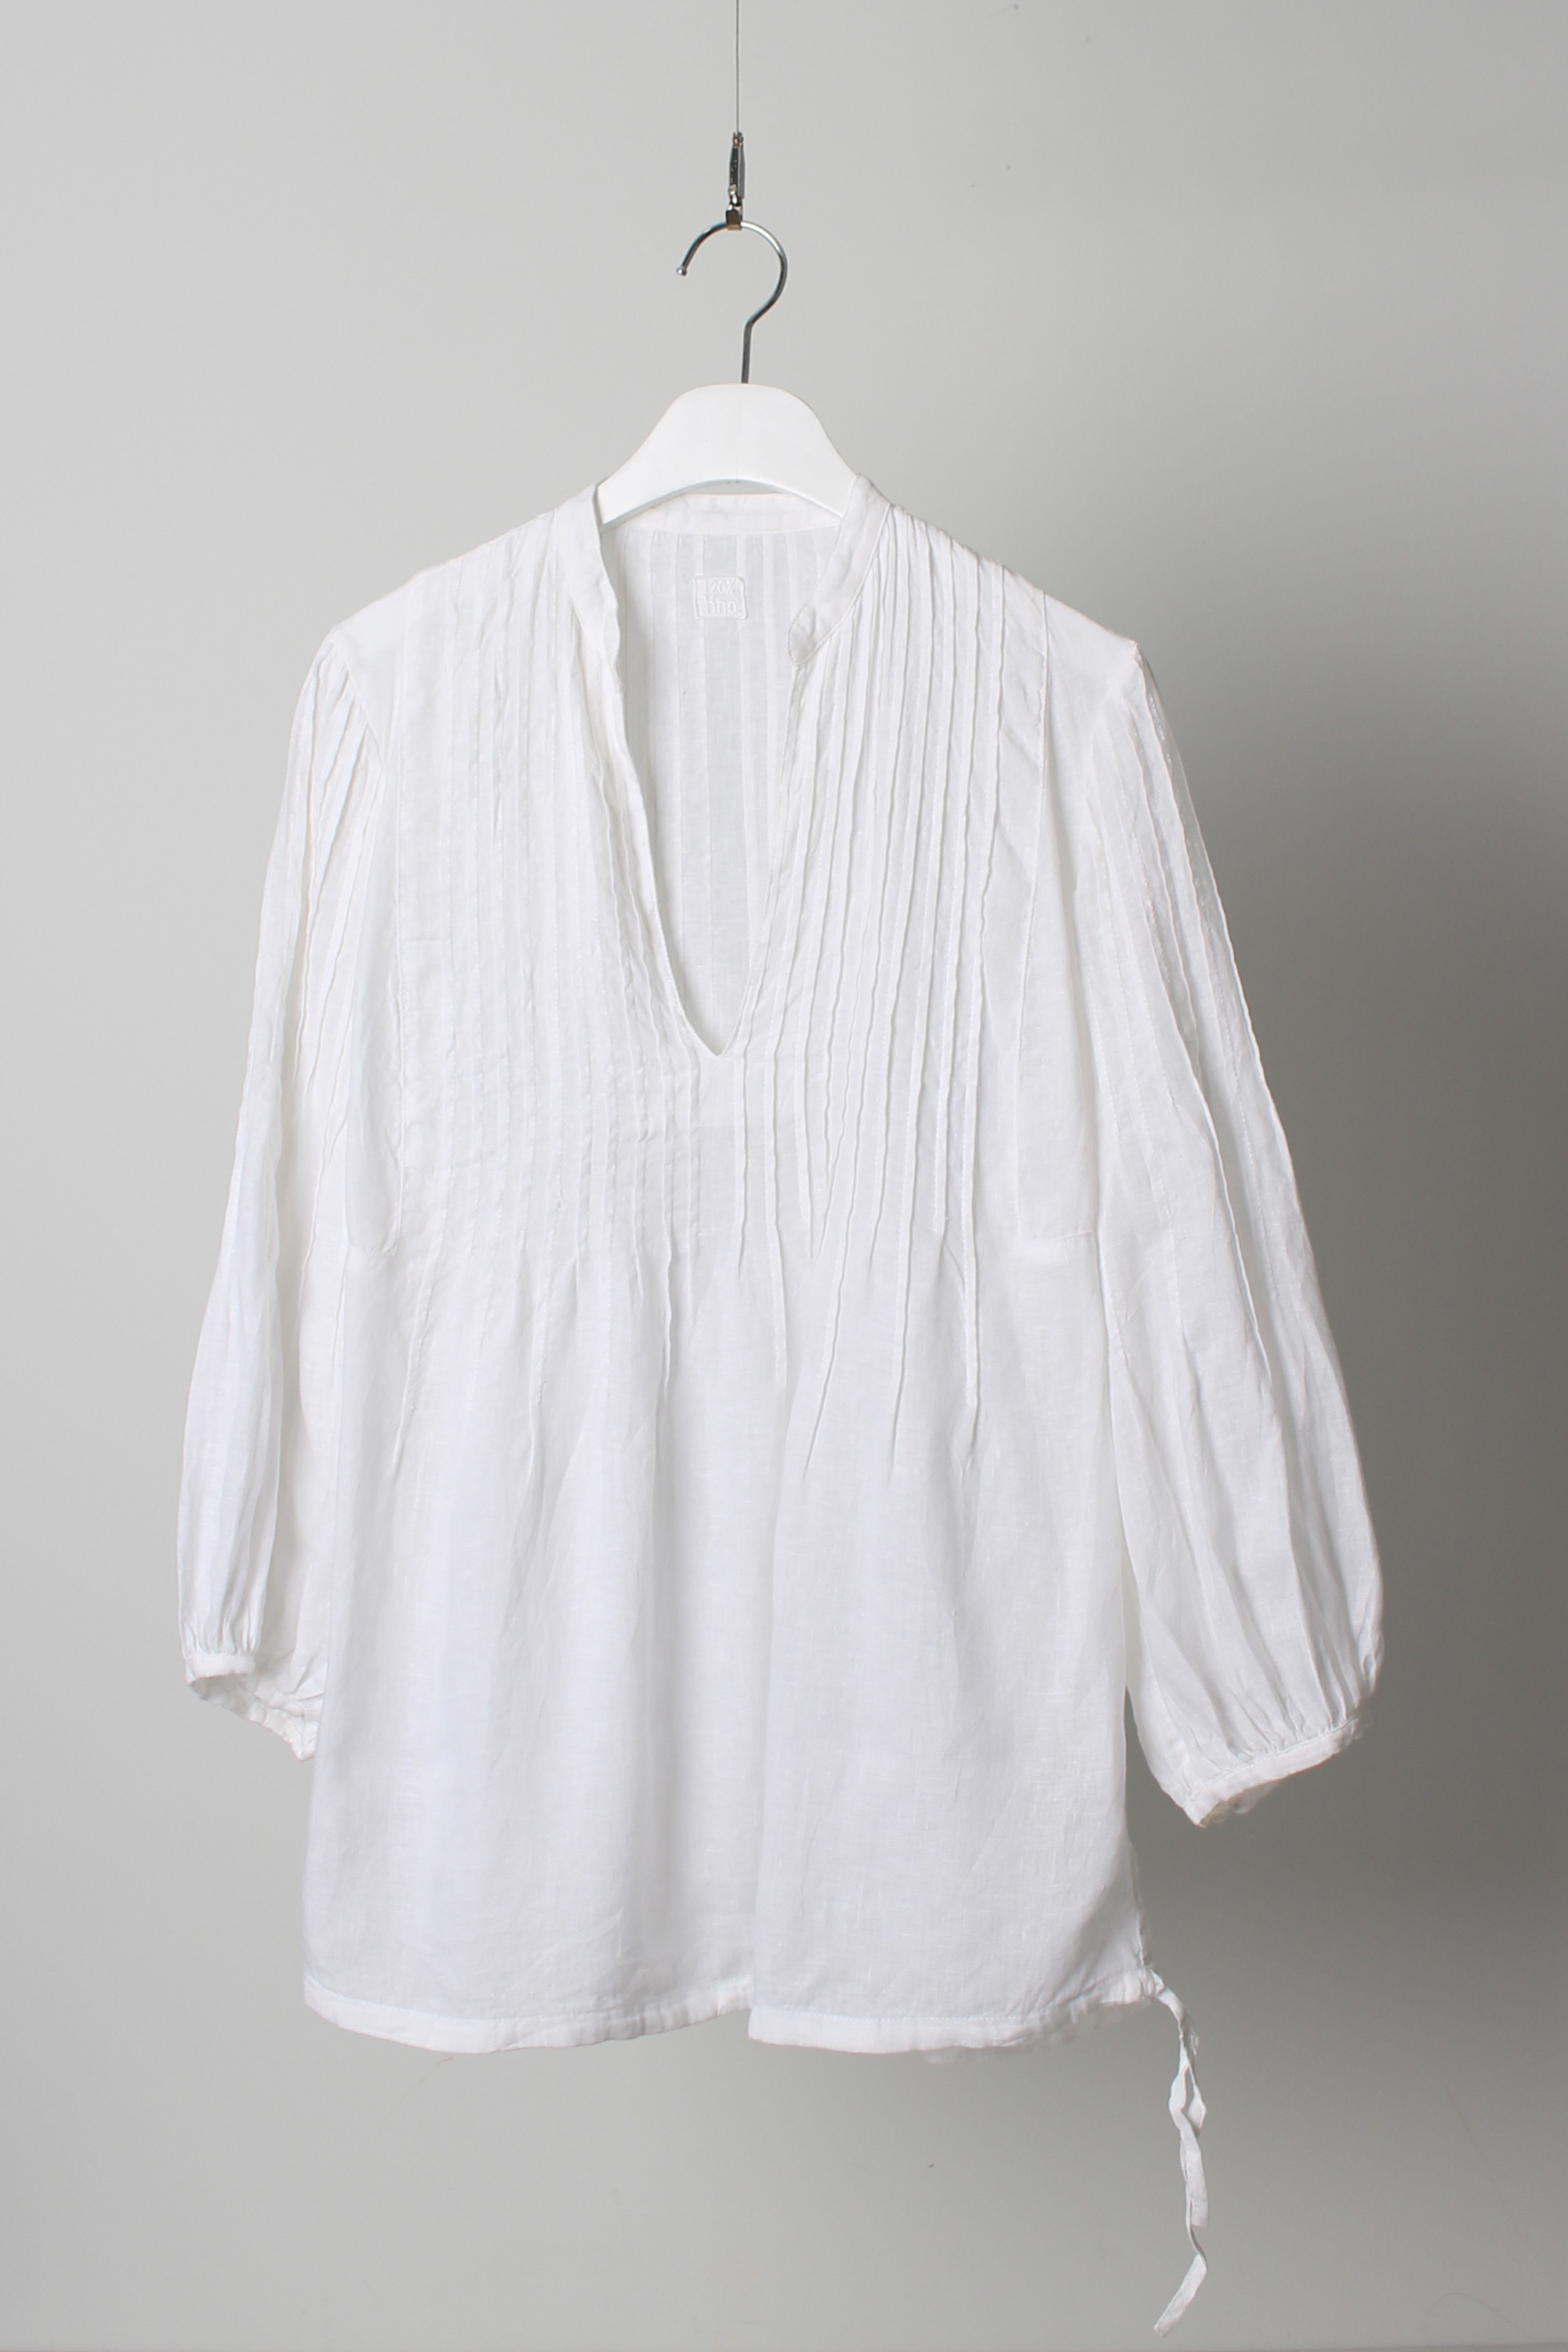 120% linen pullover shirt